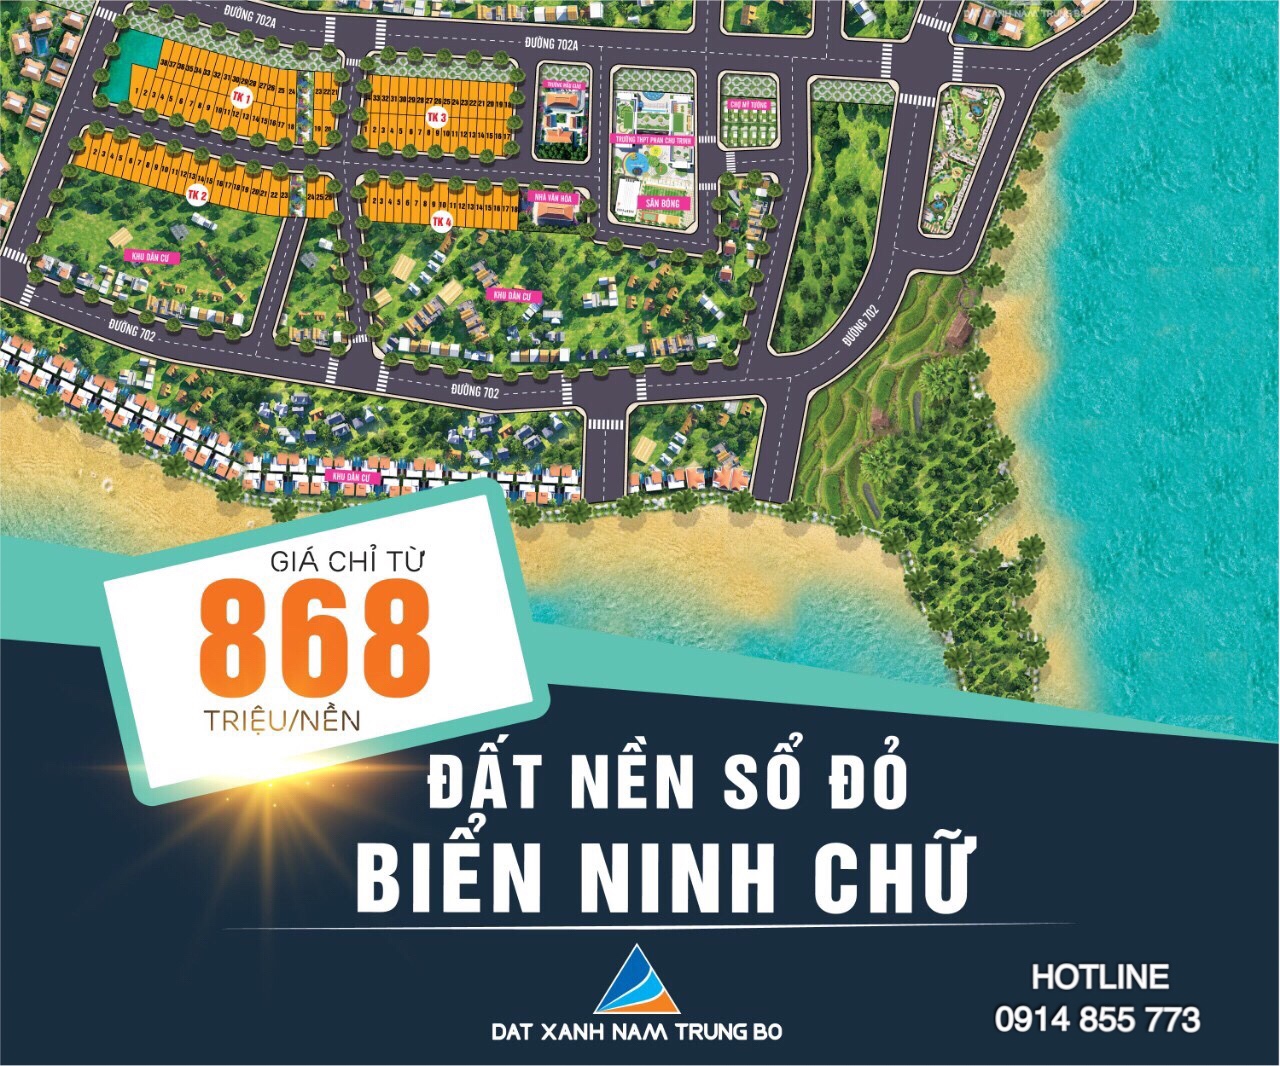 Cơn sốt đất nền tại Ninh Thuận 2019, nhanh tay chọn lô đẹp nhất dự án sắp mở bán Ninh Chữ Sea Gate 896914